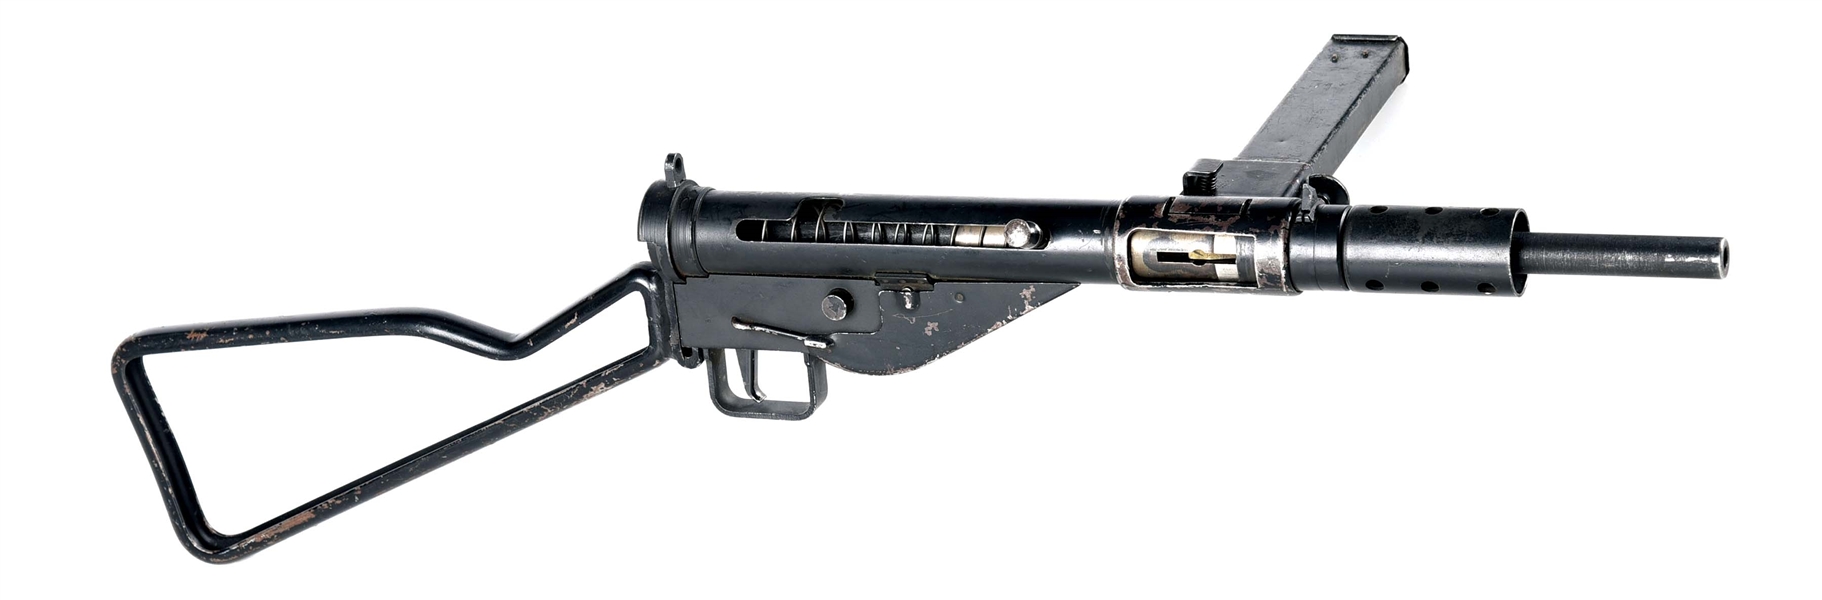 (N) FINE CONDITION ORIGINAL BRITISH STEN MK II MACHINE GUN (CURIO & RELIC).